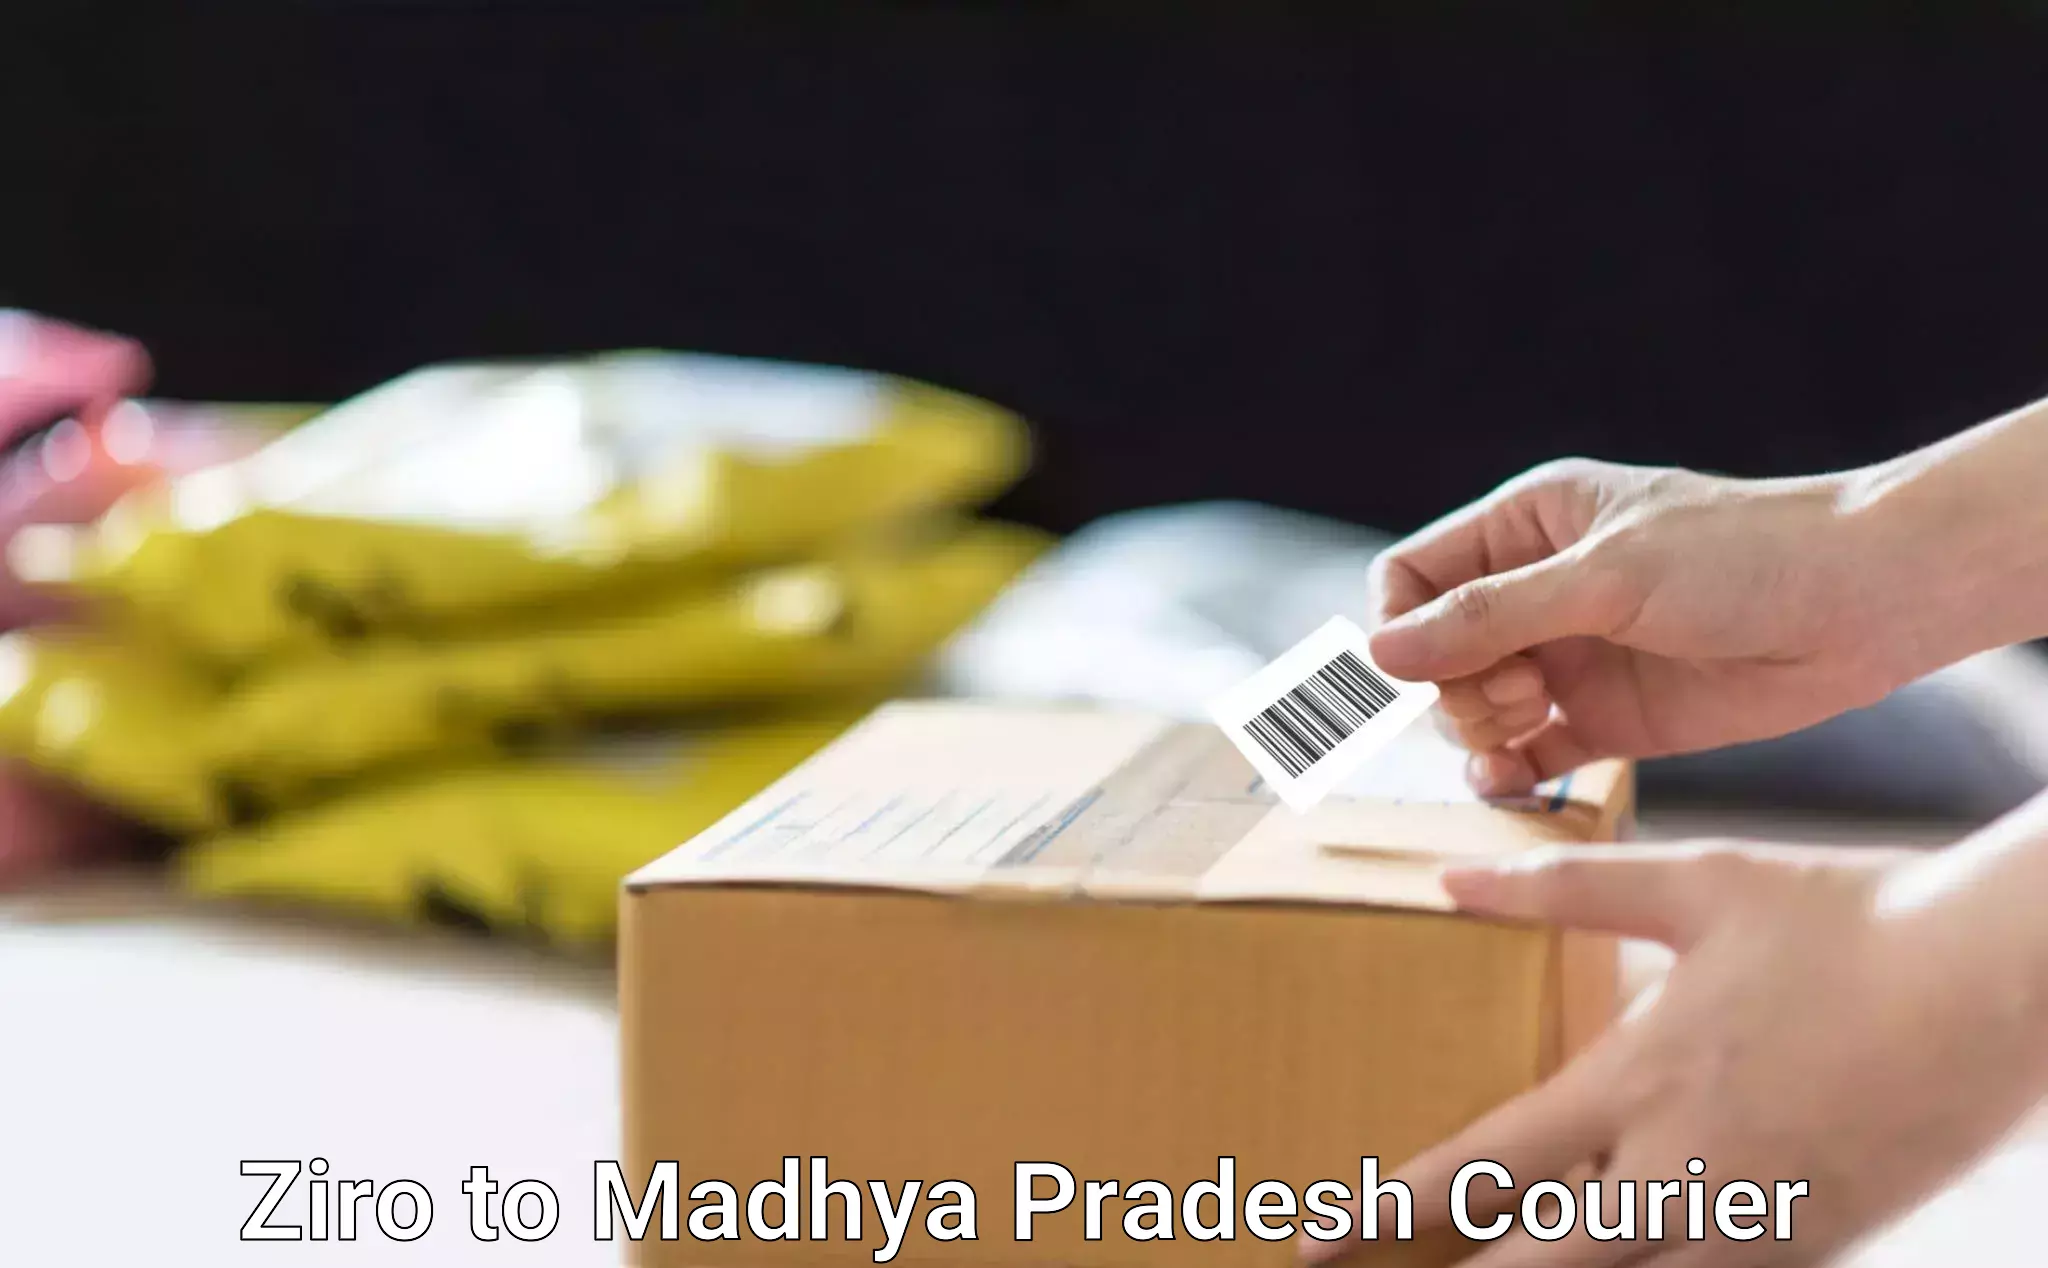 Quality courier partnerships Ziro to Madhya Pradesh